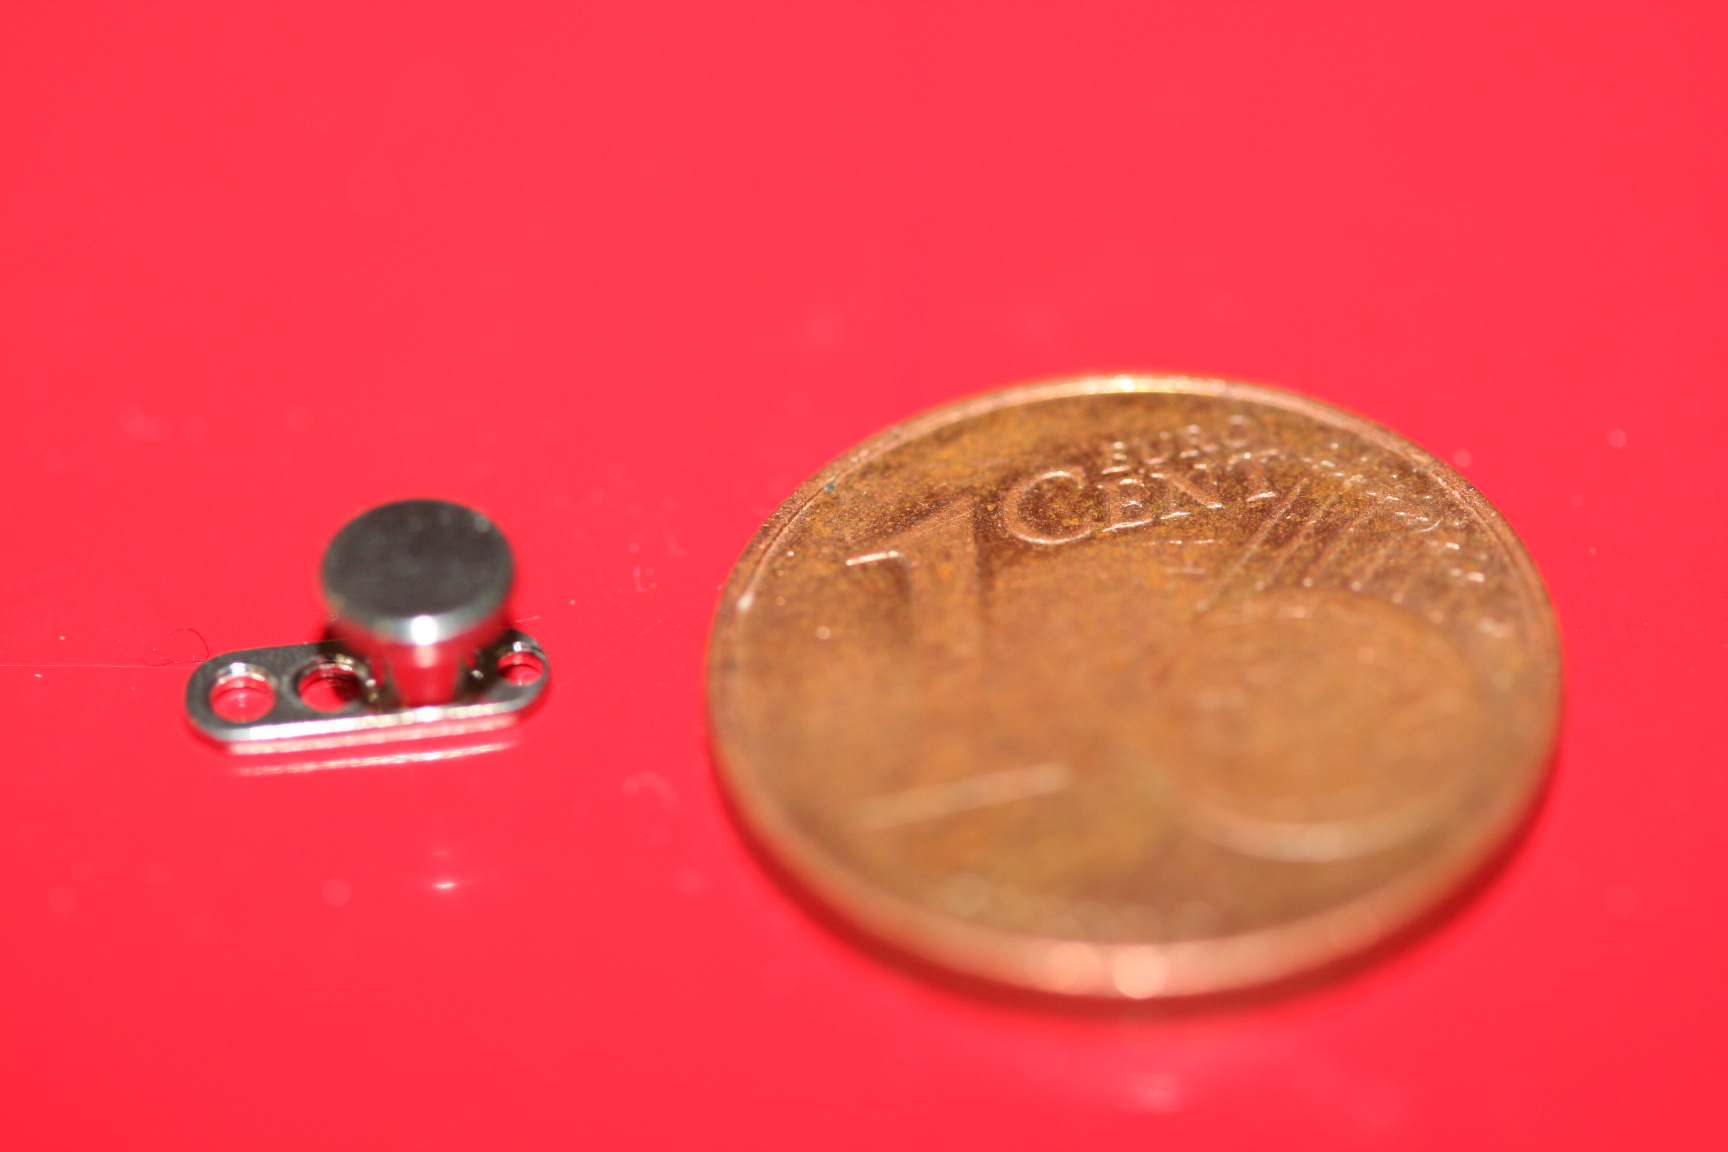 Microdermal Größenverhältnis im Vergleich mit einem 1 Cent Stück